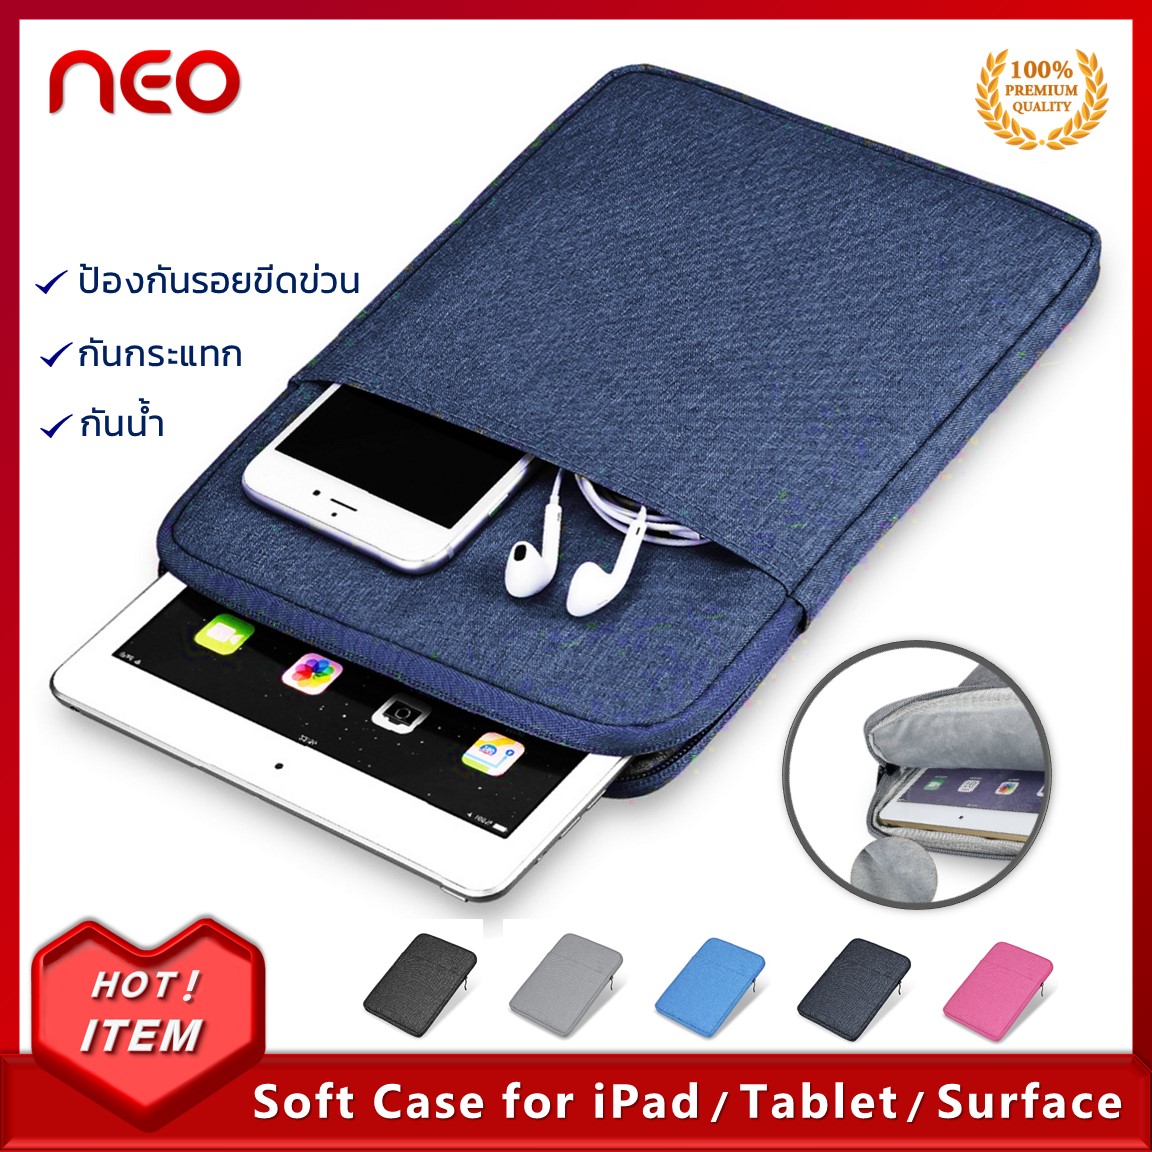 พร้อมส่ง!! กระเป๋าiPad กระเป๋าใส่Tablet กันกระแทก กันน้ำ ซองใส่ไอแพด ซองผ้าใส่แท็บเล็ต เคสใส่โน๊ตบุ๊ค ซองแล็ปท็อป สำหรับขนาด 9.7 - 11นิ้ว IPad Soft Case Tablet Bag 9.7-11 inch